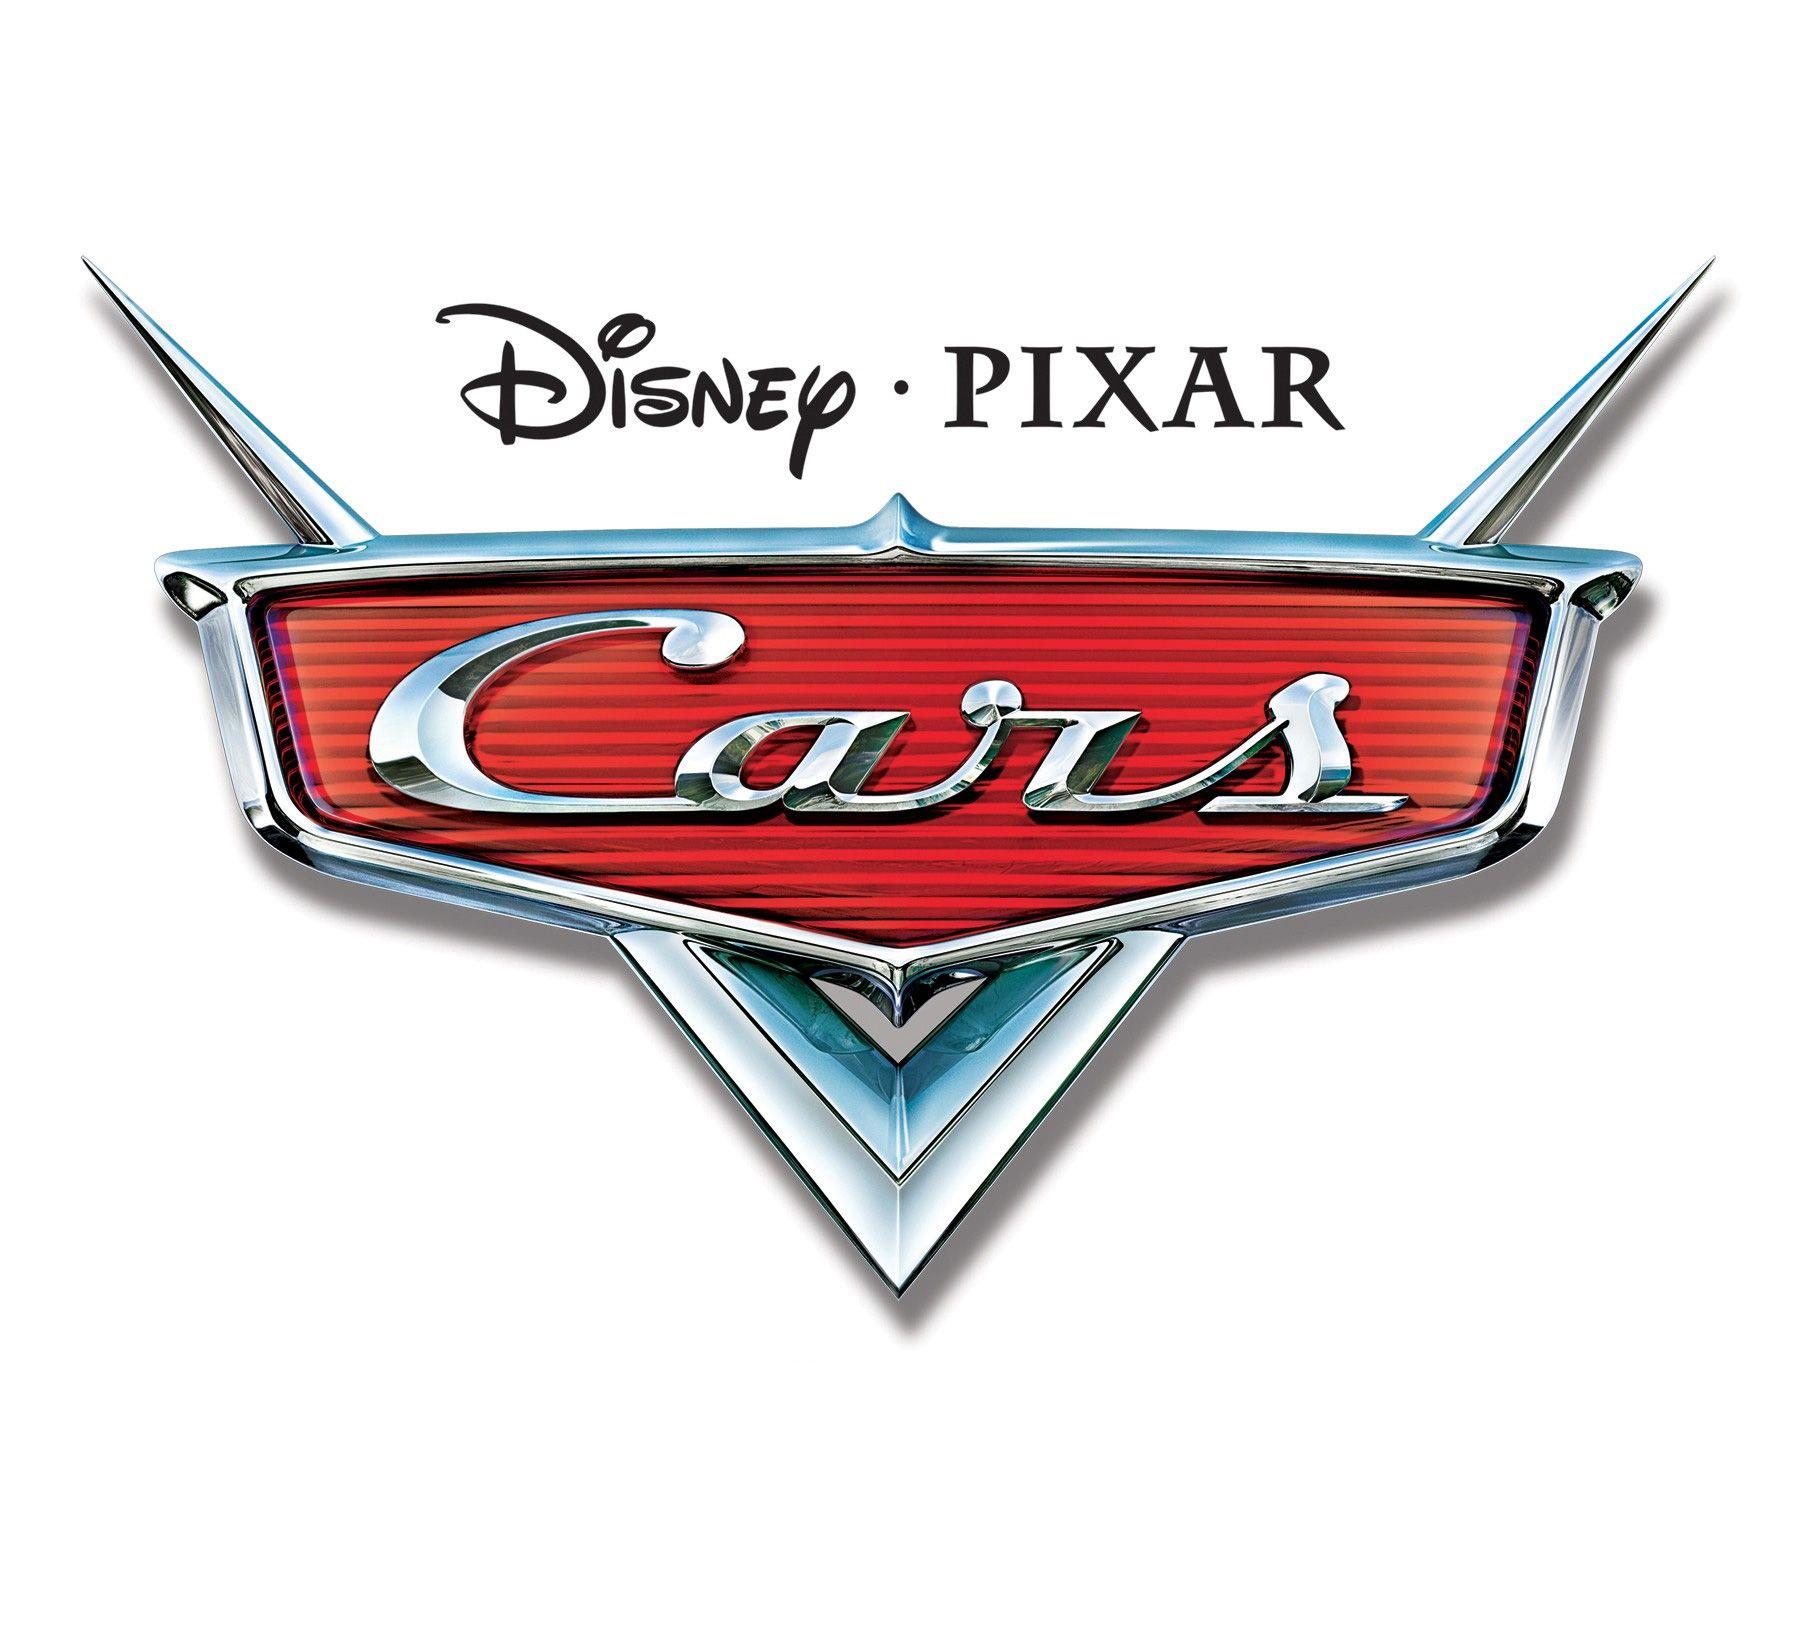 Pixar Movie Logo - Cars (2006 film) logo